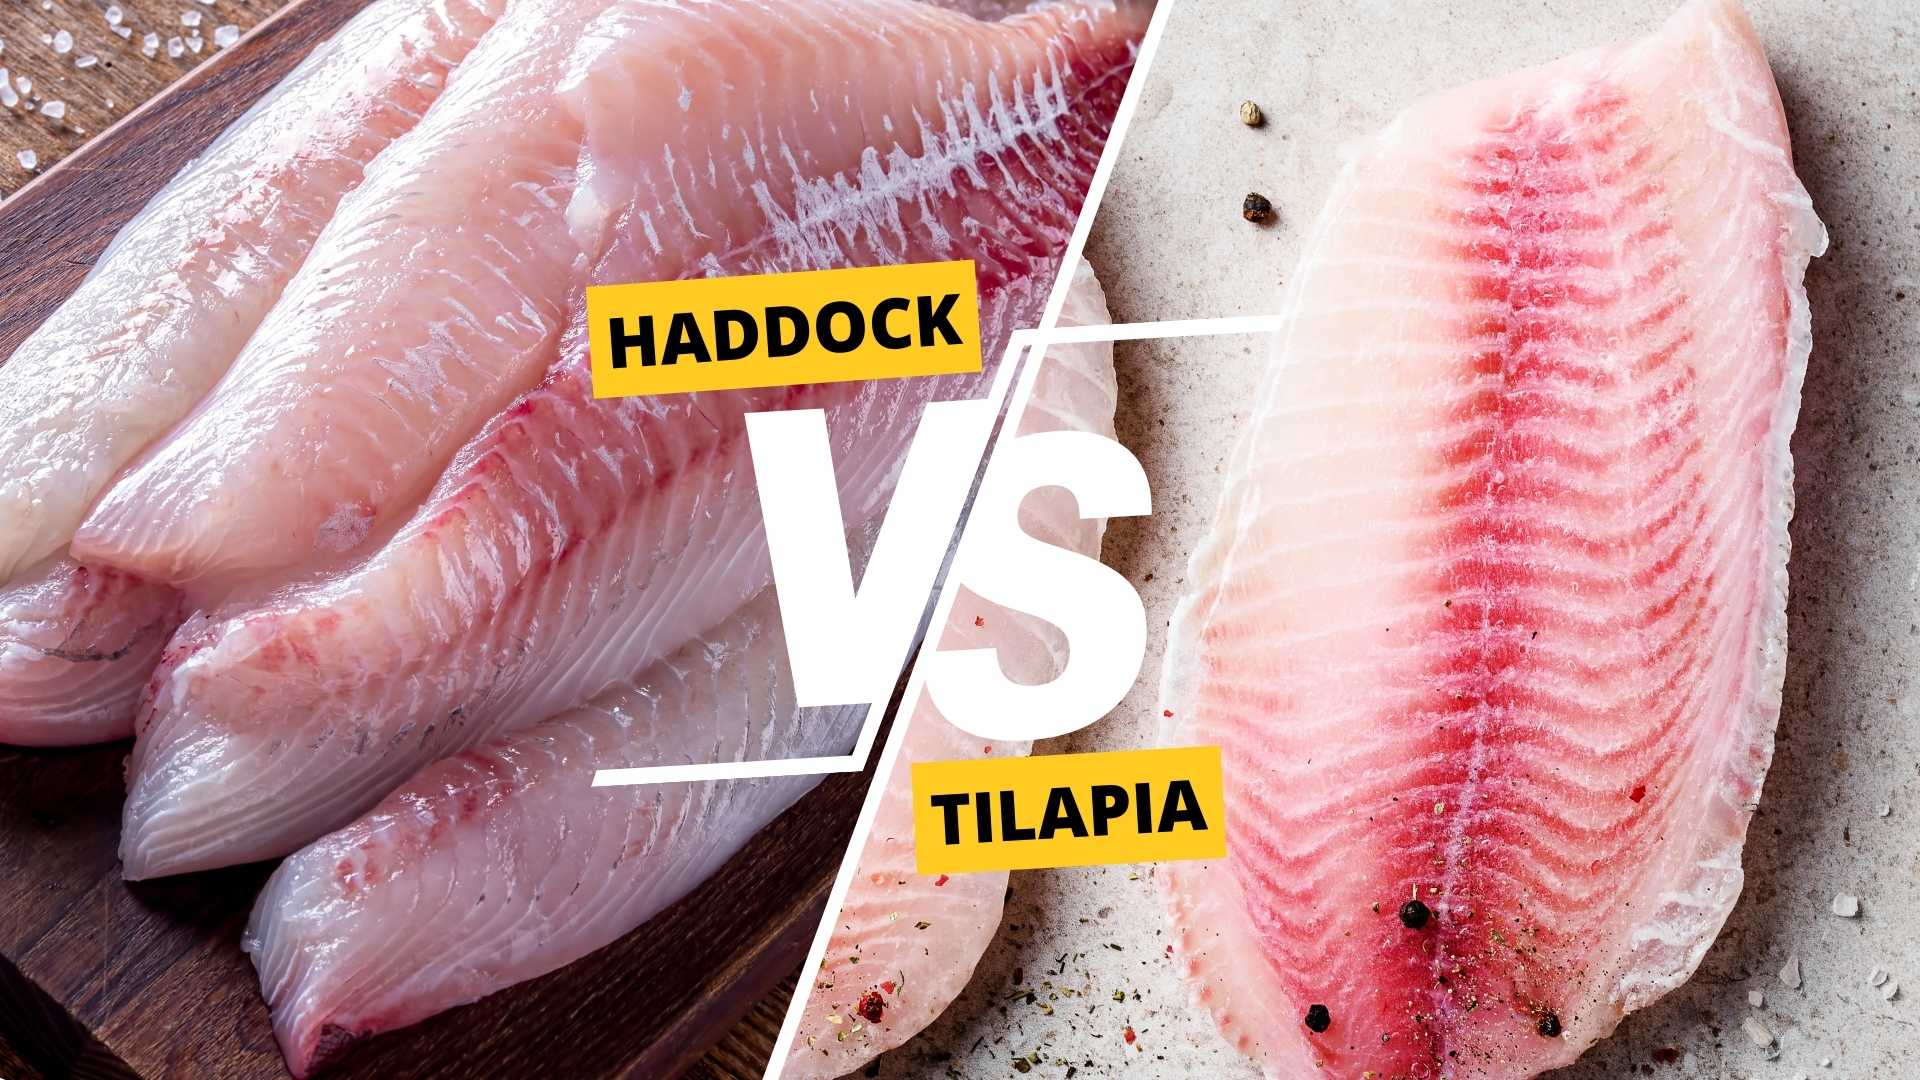 Haddock vs Tilapia